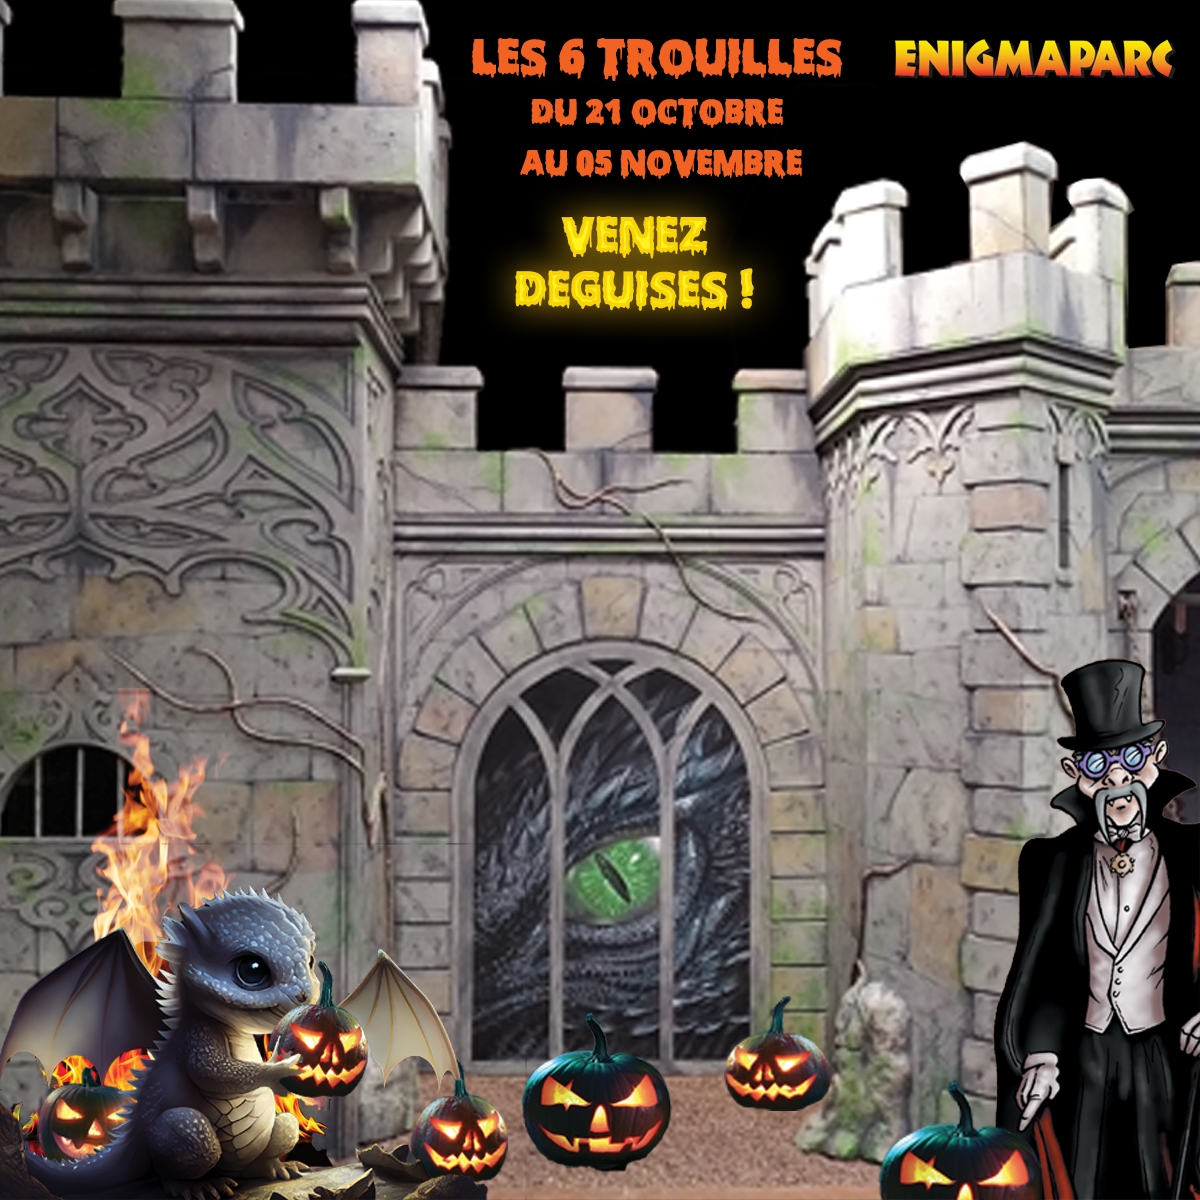 Les 6 trouilles d'Halloween à Enigmaparc Rennes